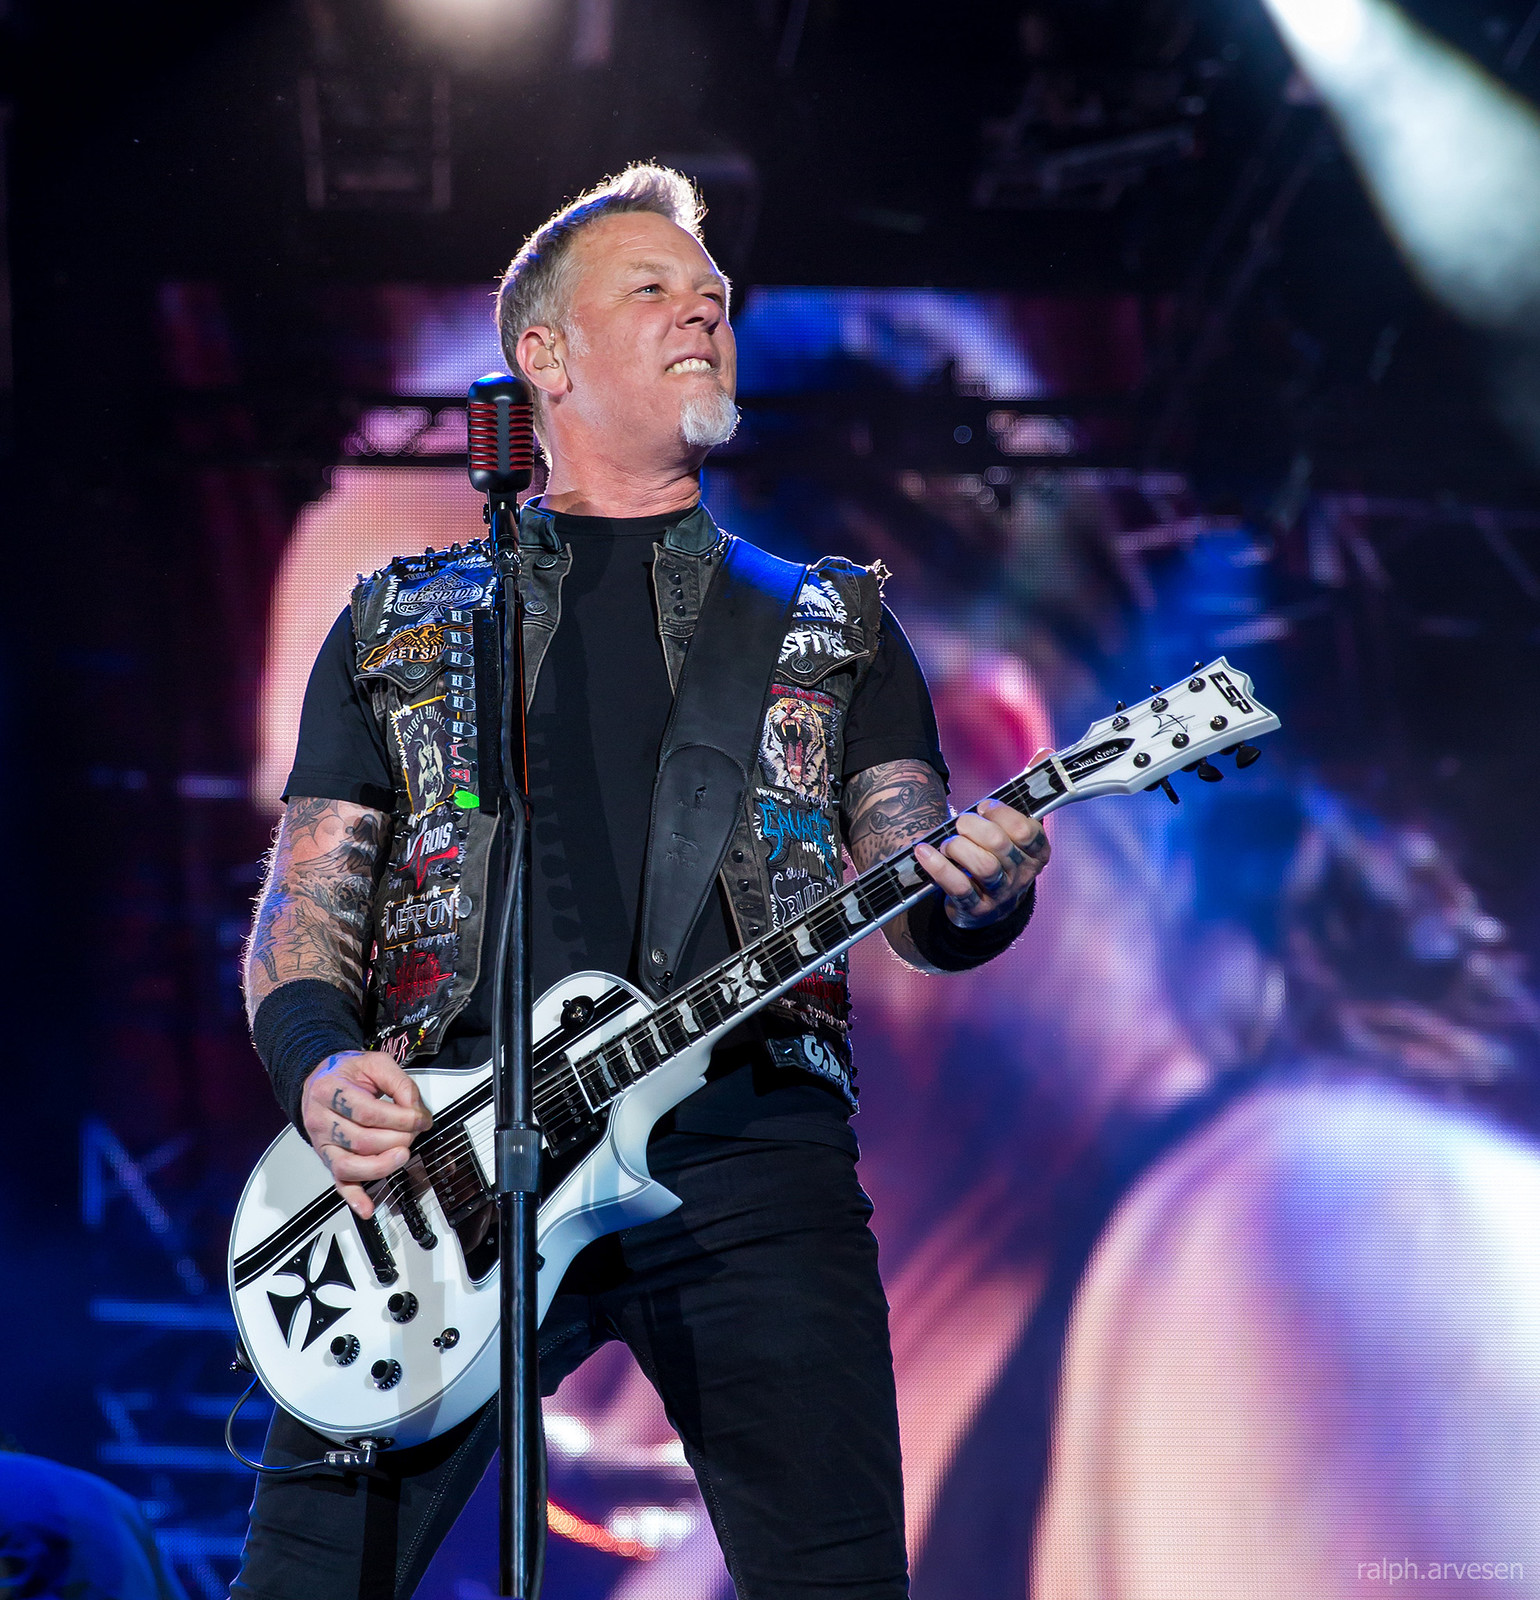 Metallica | Texas Review | Ralph Arvesen